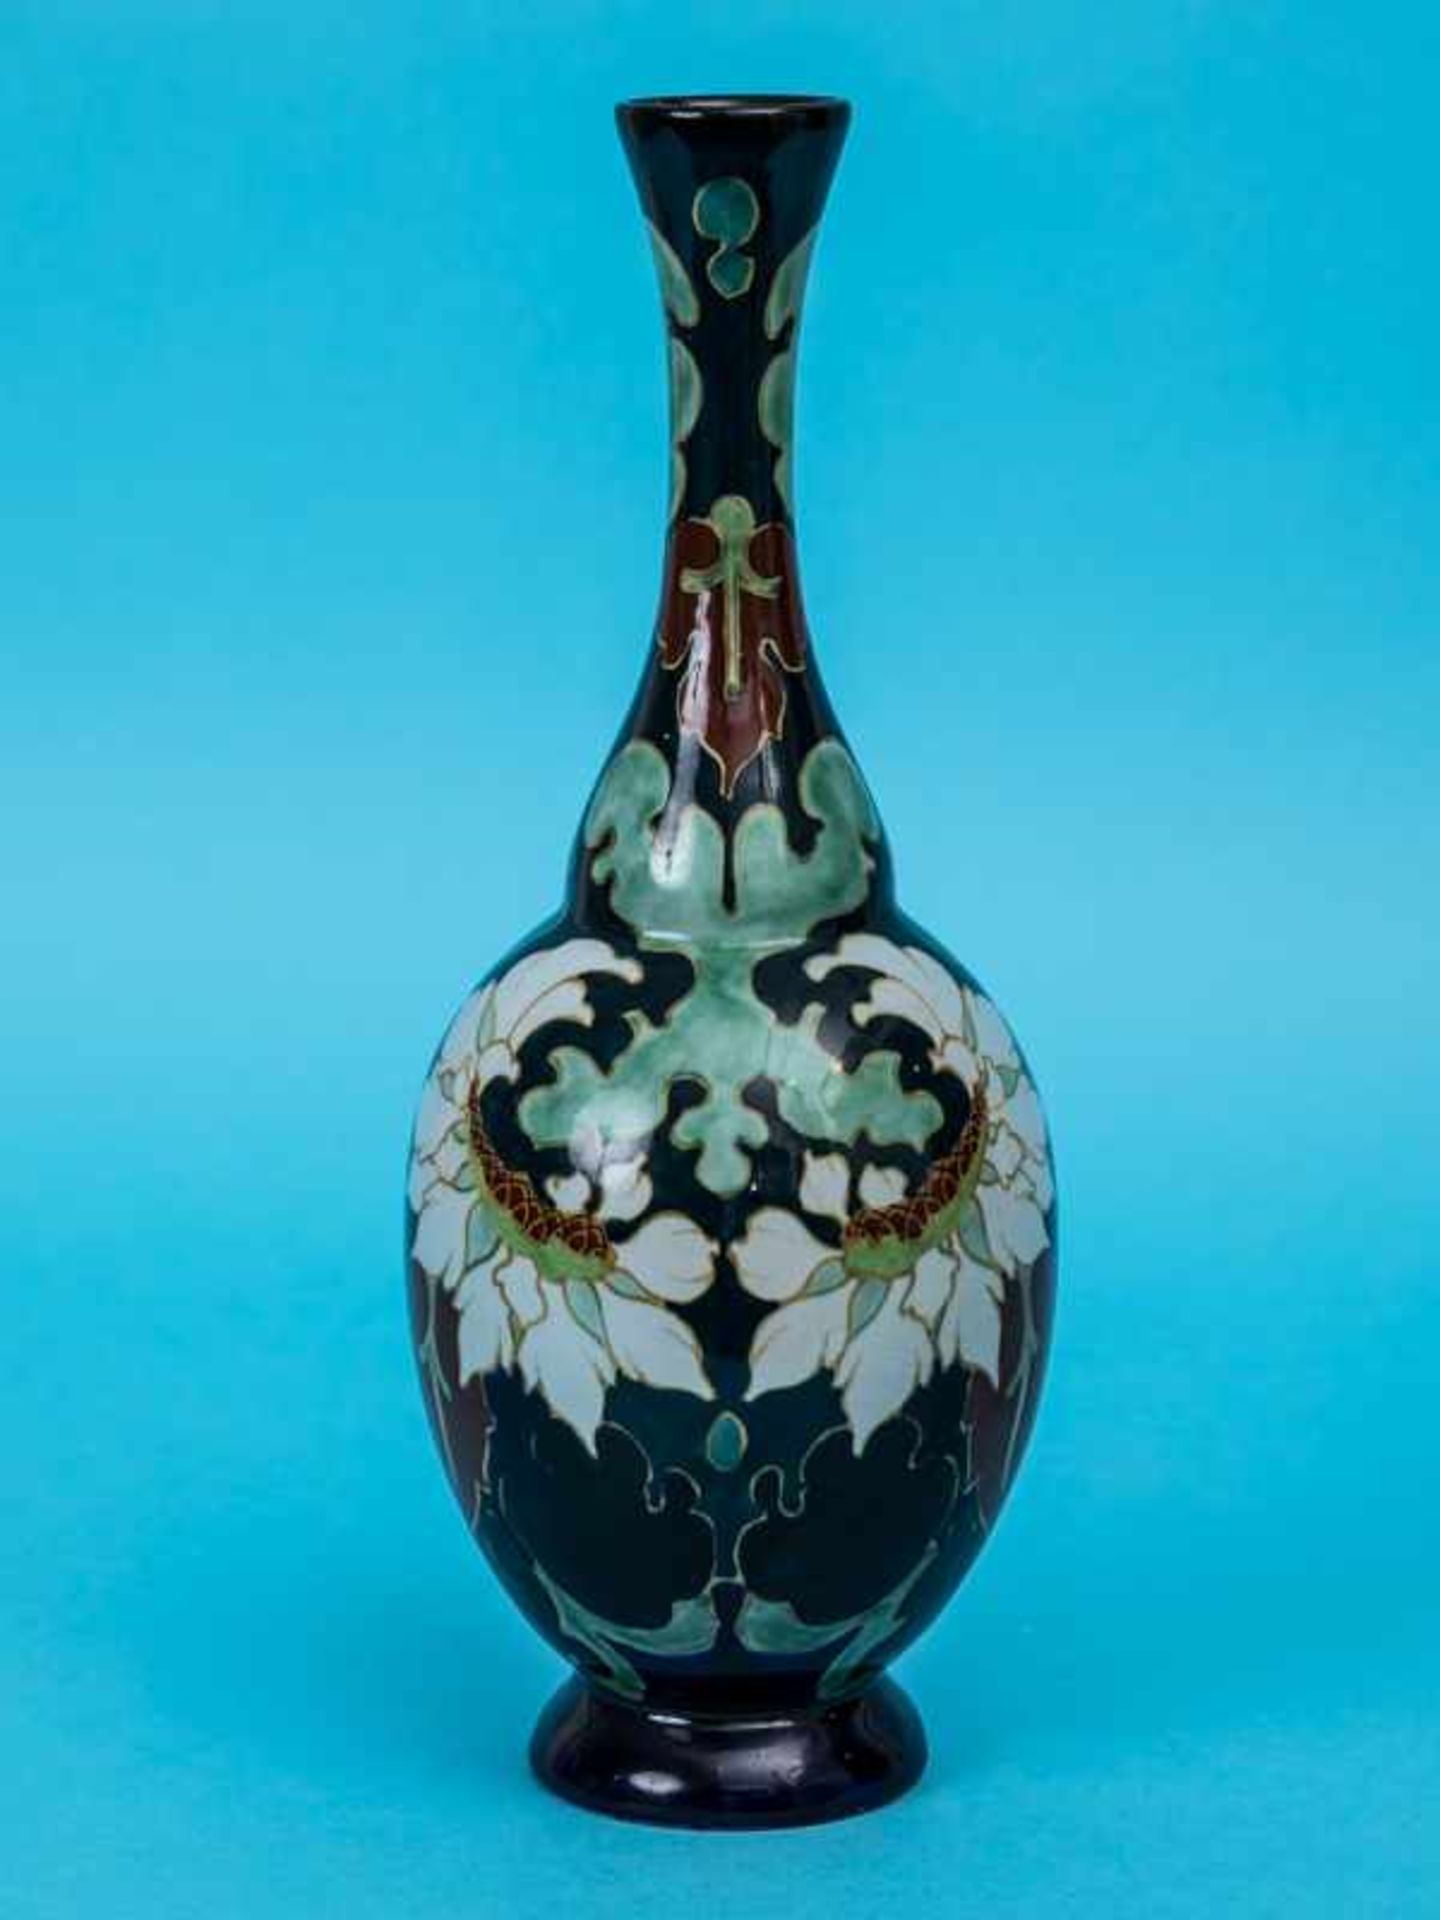 Vase, Dekor "Sevilla", Regina-Manufaktur, Gouda, Holland, 1. Hälfte 20. Jh. Keramik, dunkelgrün- und